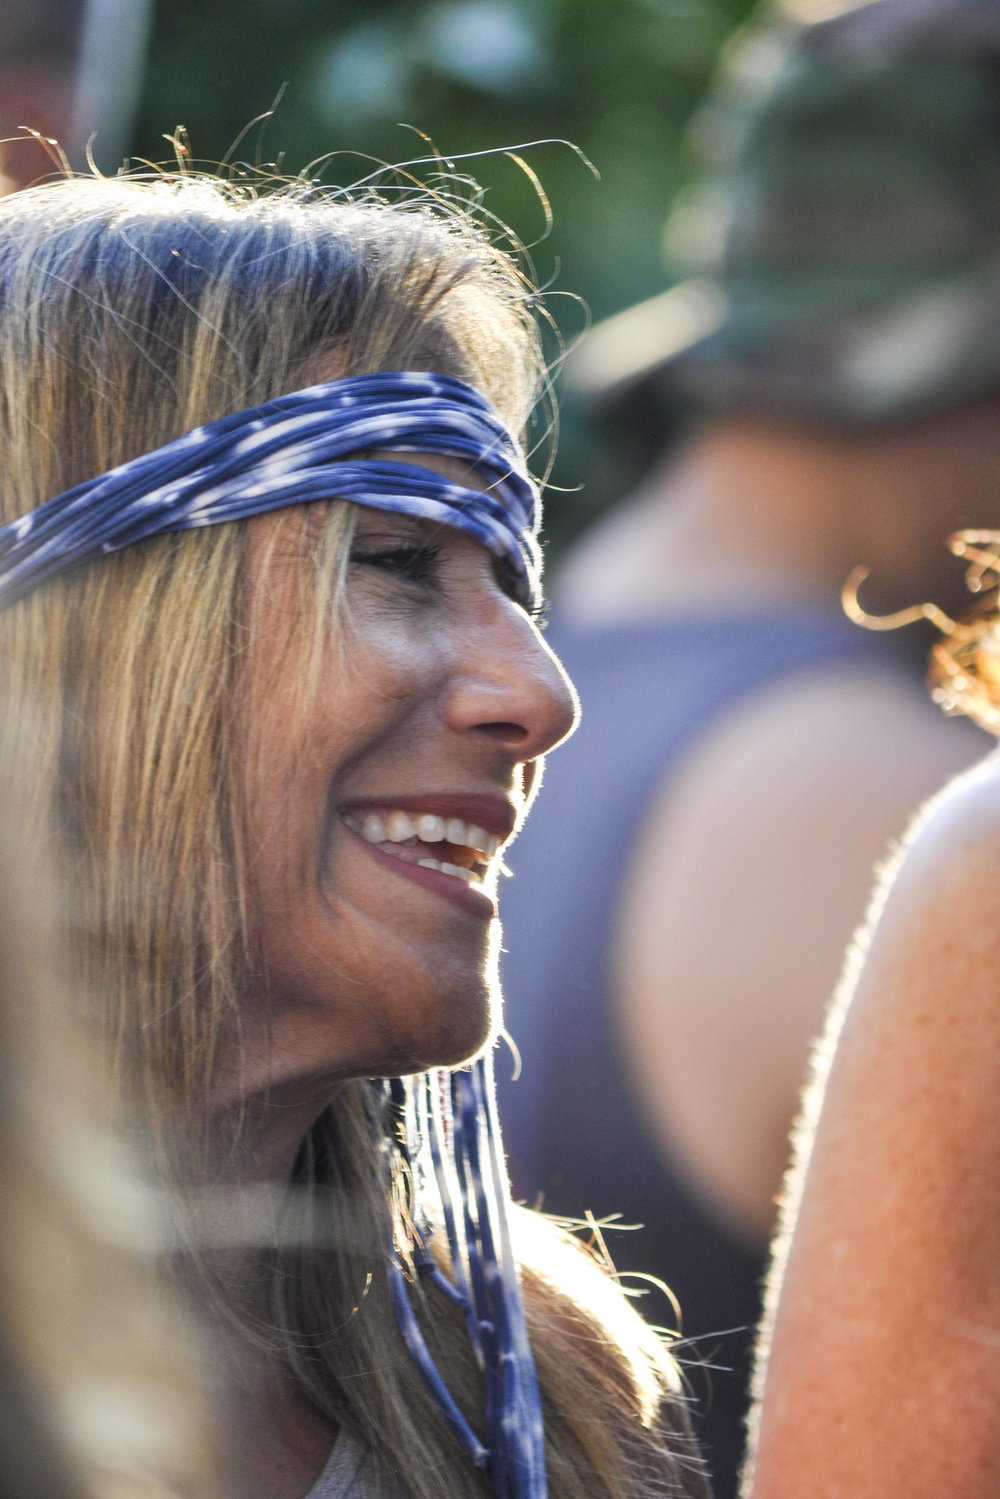 @ Woodstock 2019_woman bandana_smile.jpg